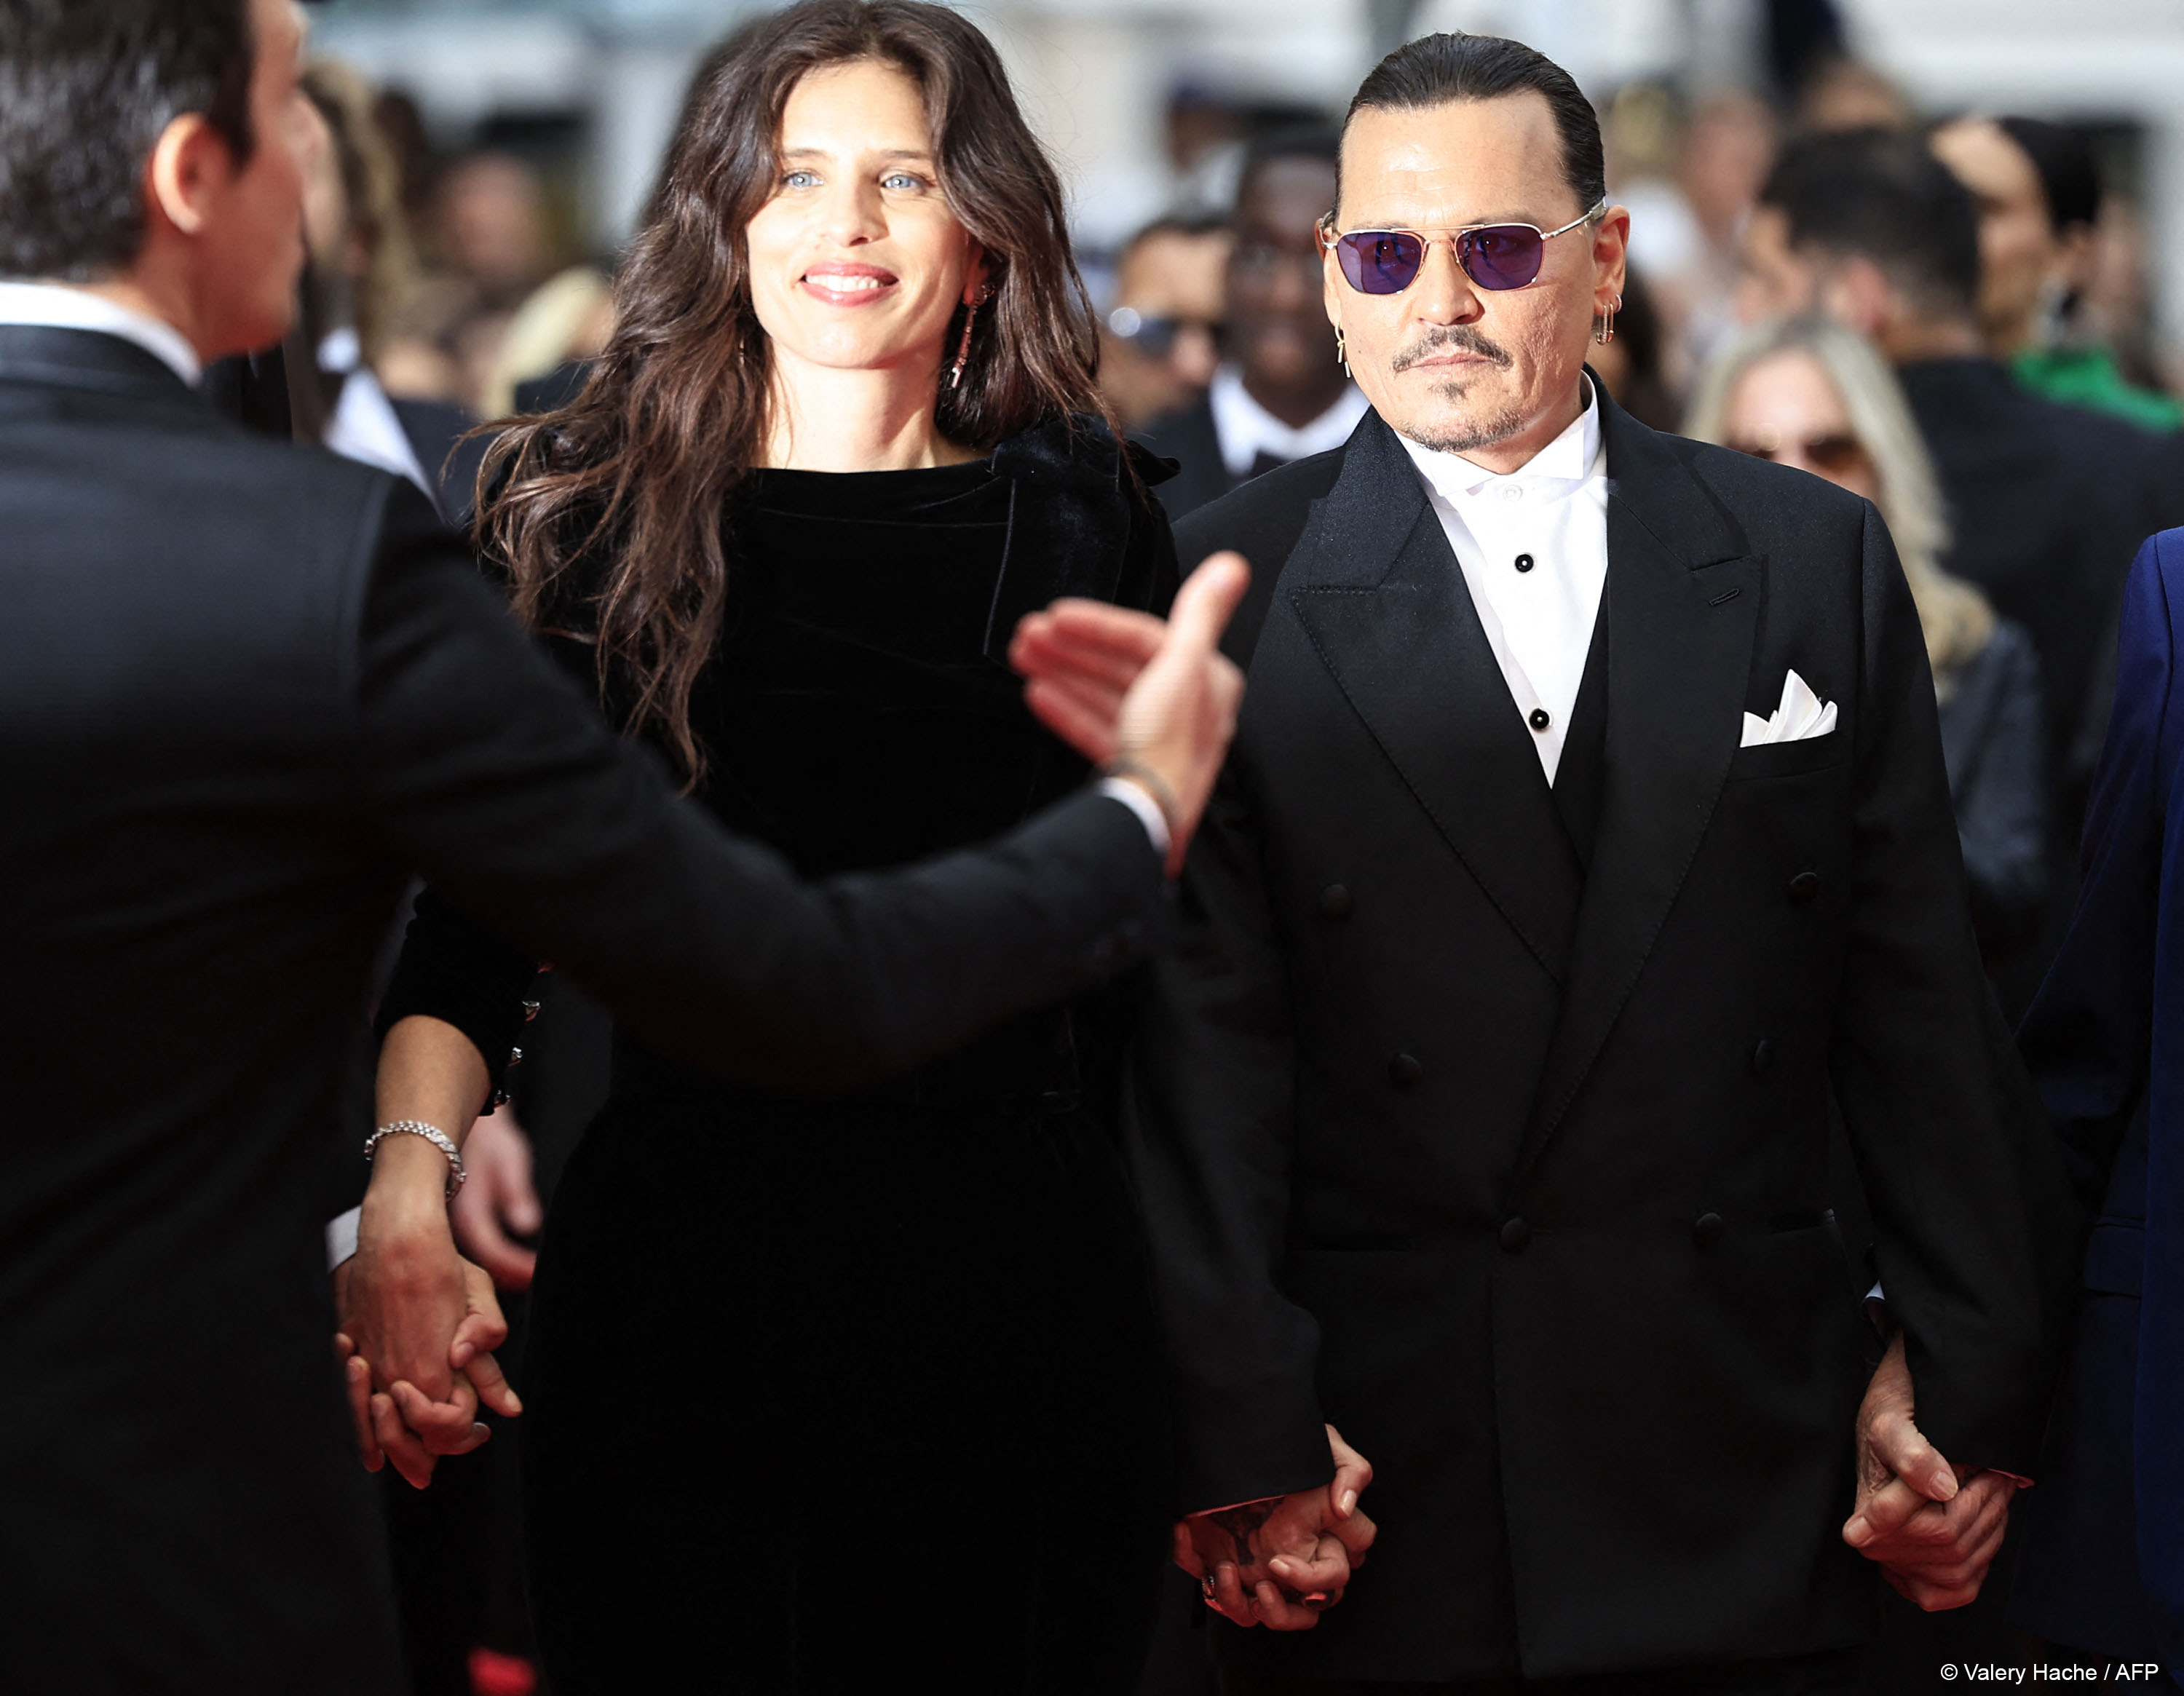 Festival de Cannes defende filme de Johnny Depp após polêmica com Amber  Heard